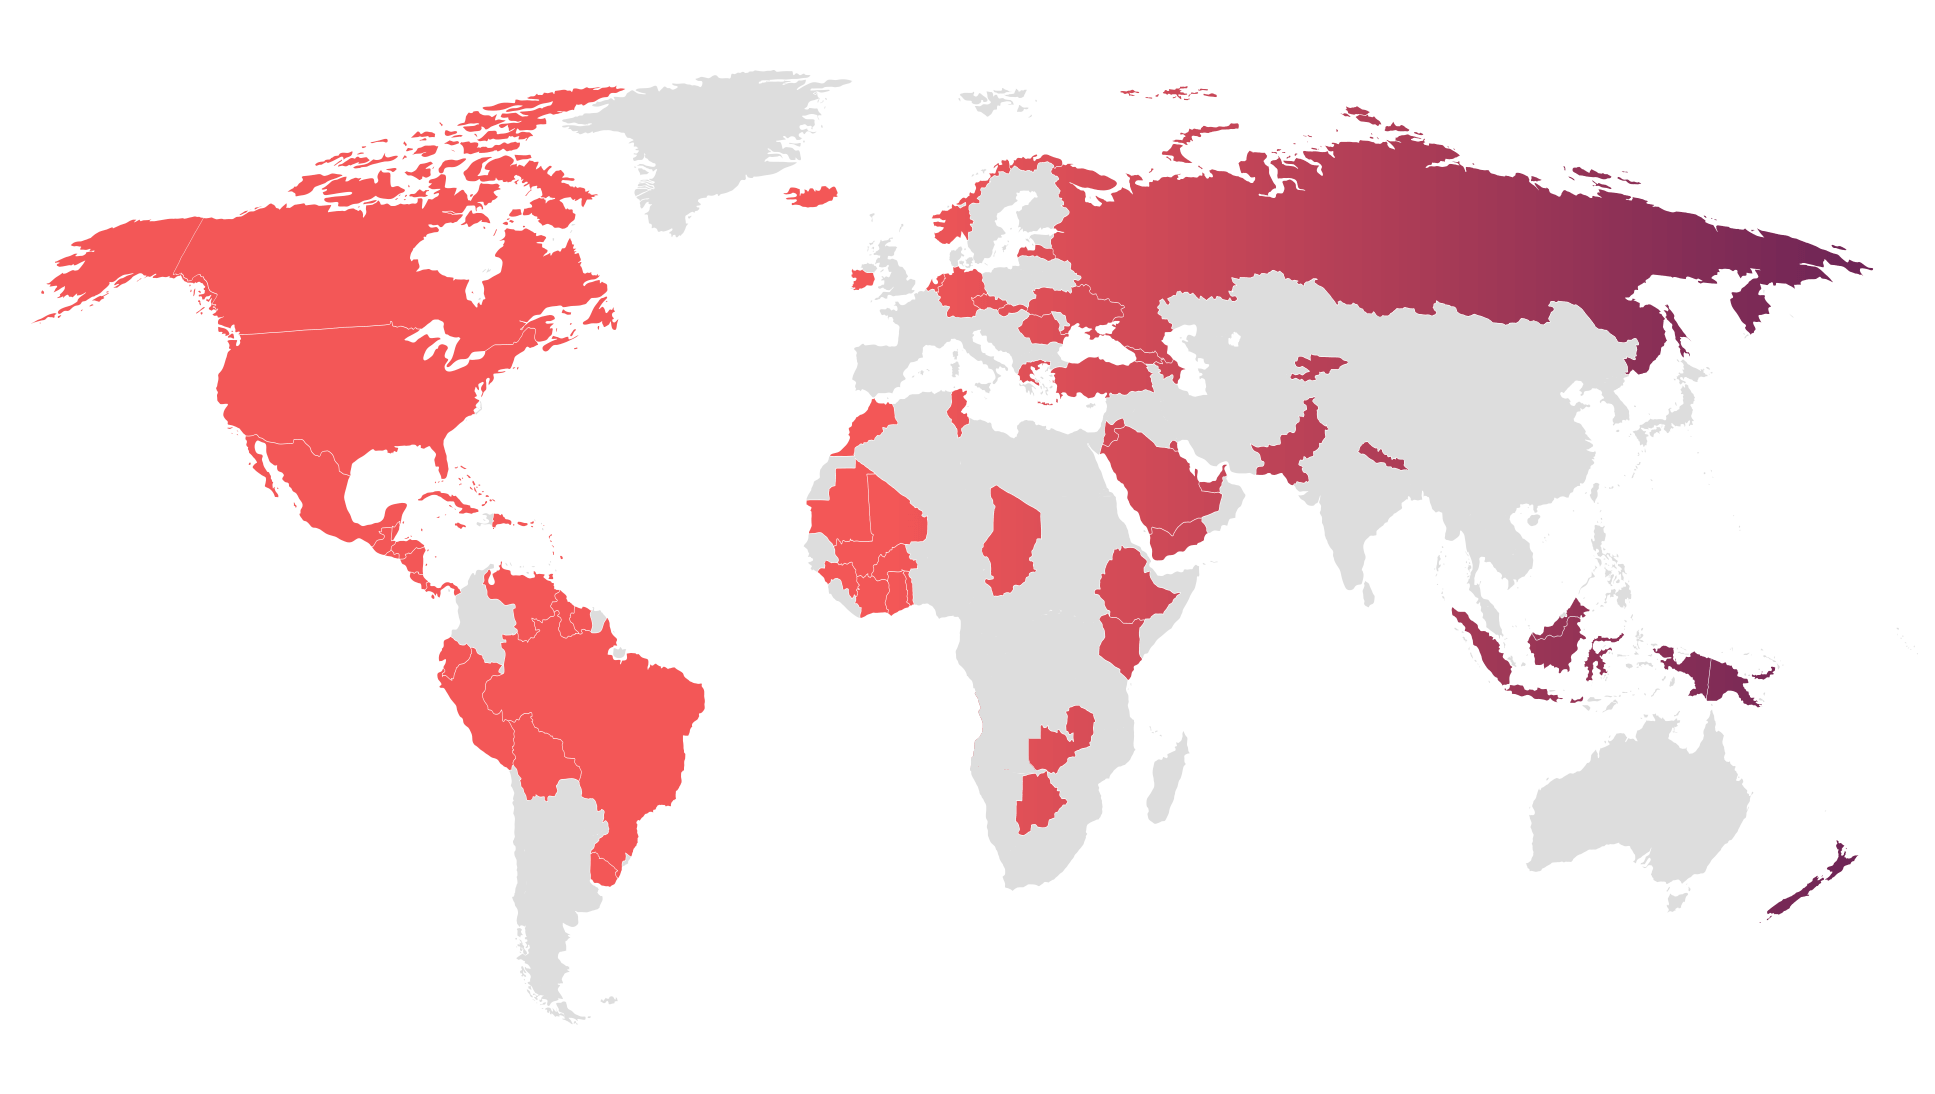 Mapa del mundo indicando los 80 países clientes de CBN